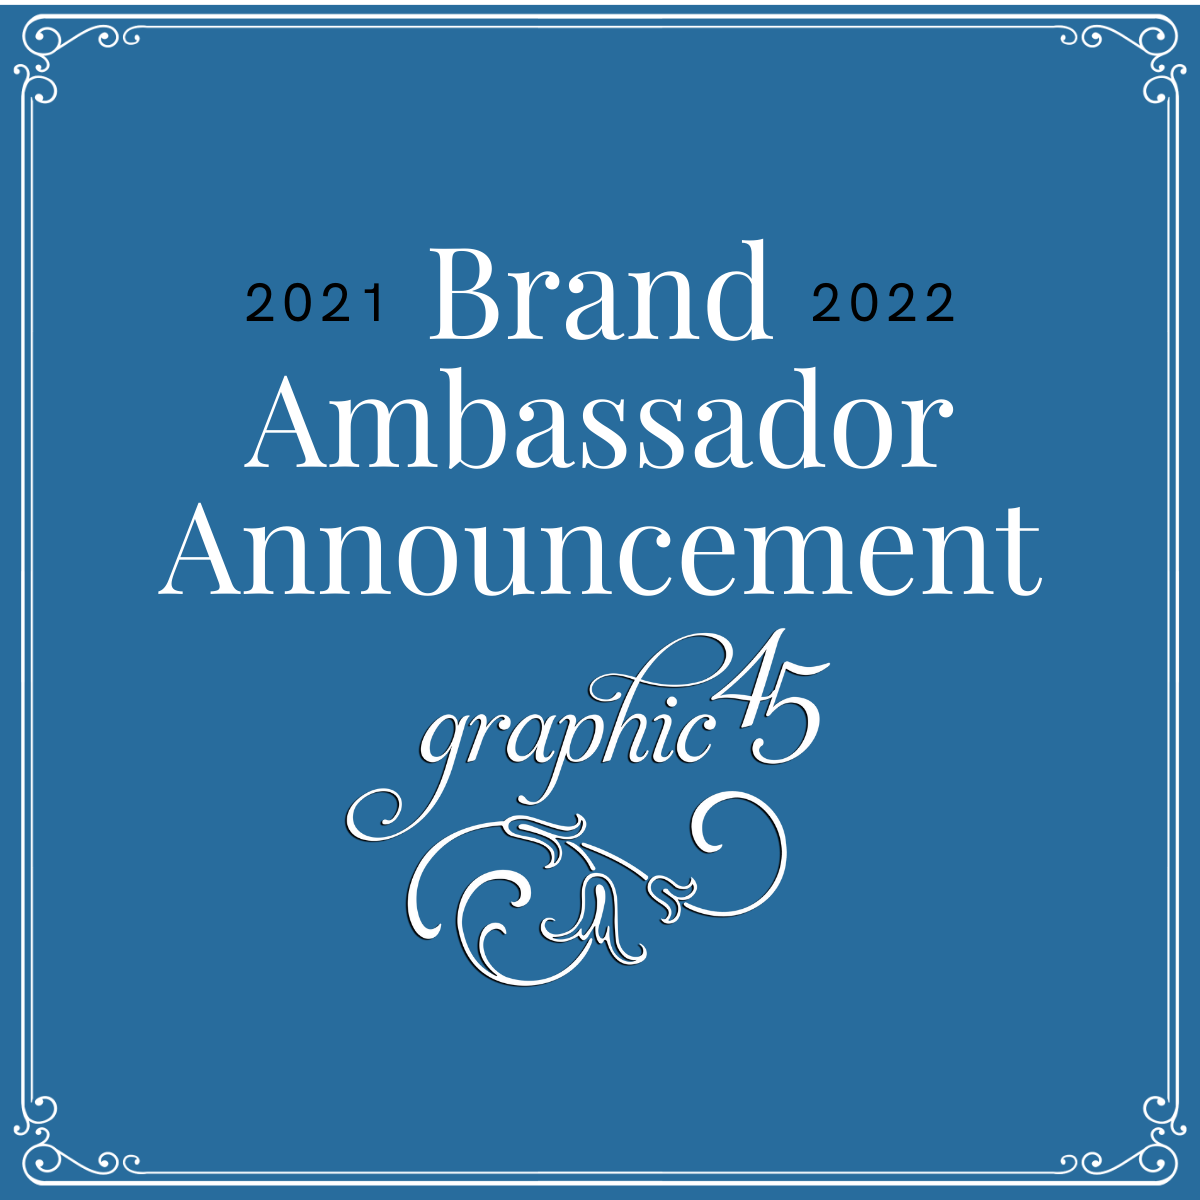 Brand Ambassador 2021-2022